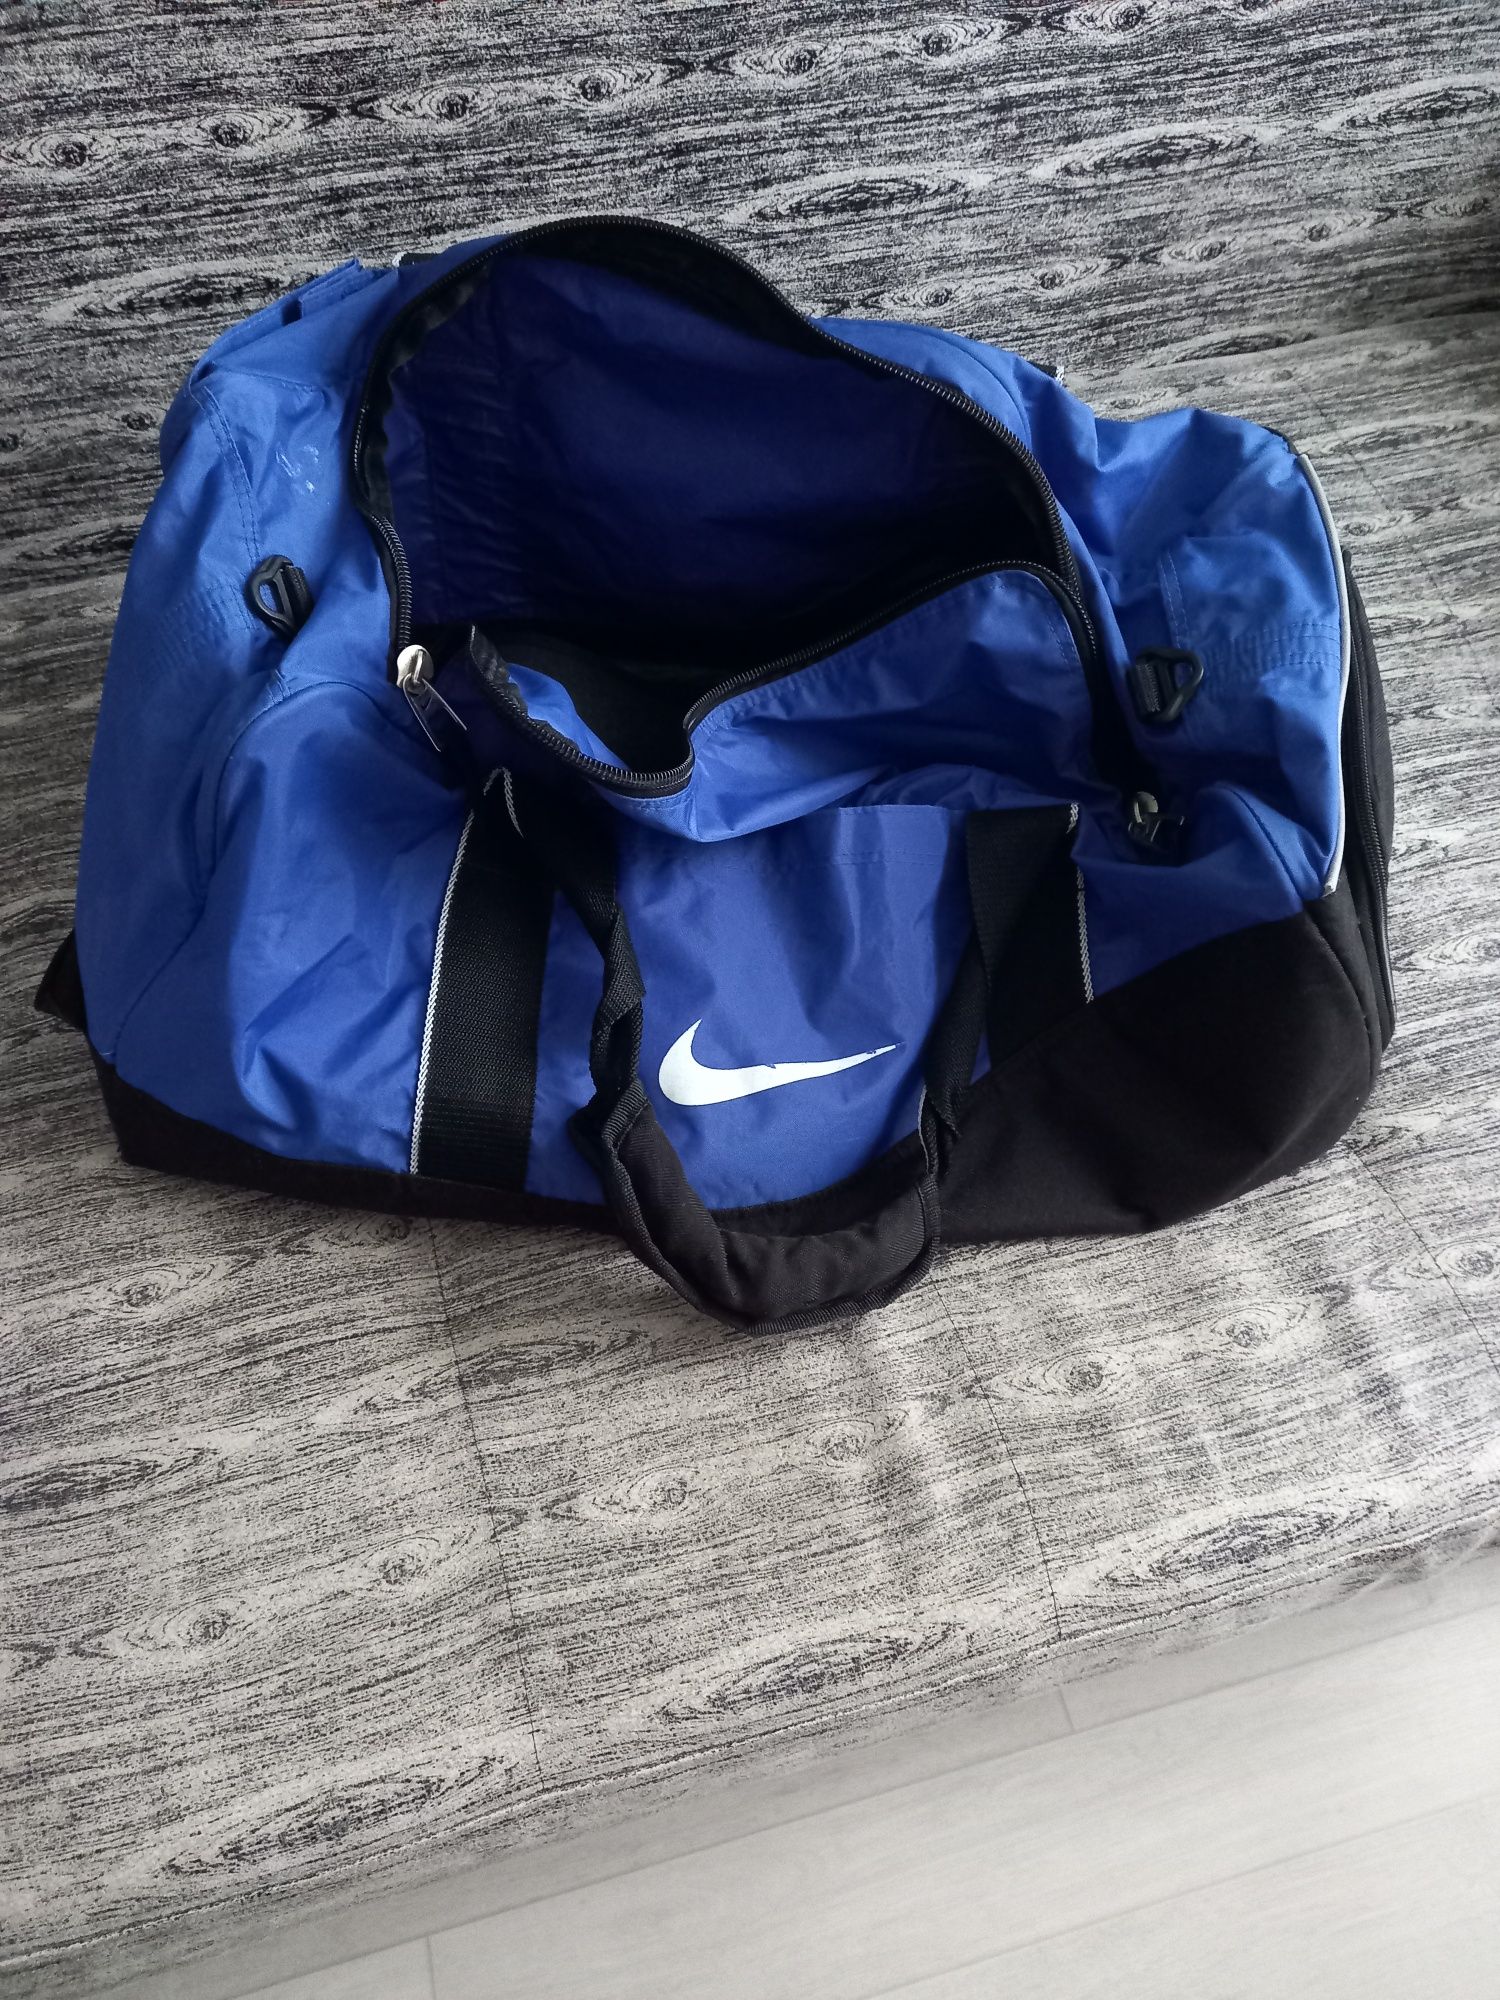 Спортивная сумка,  фирма Nike. По габаритам подходит для ручной клади